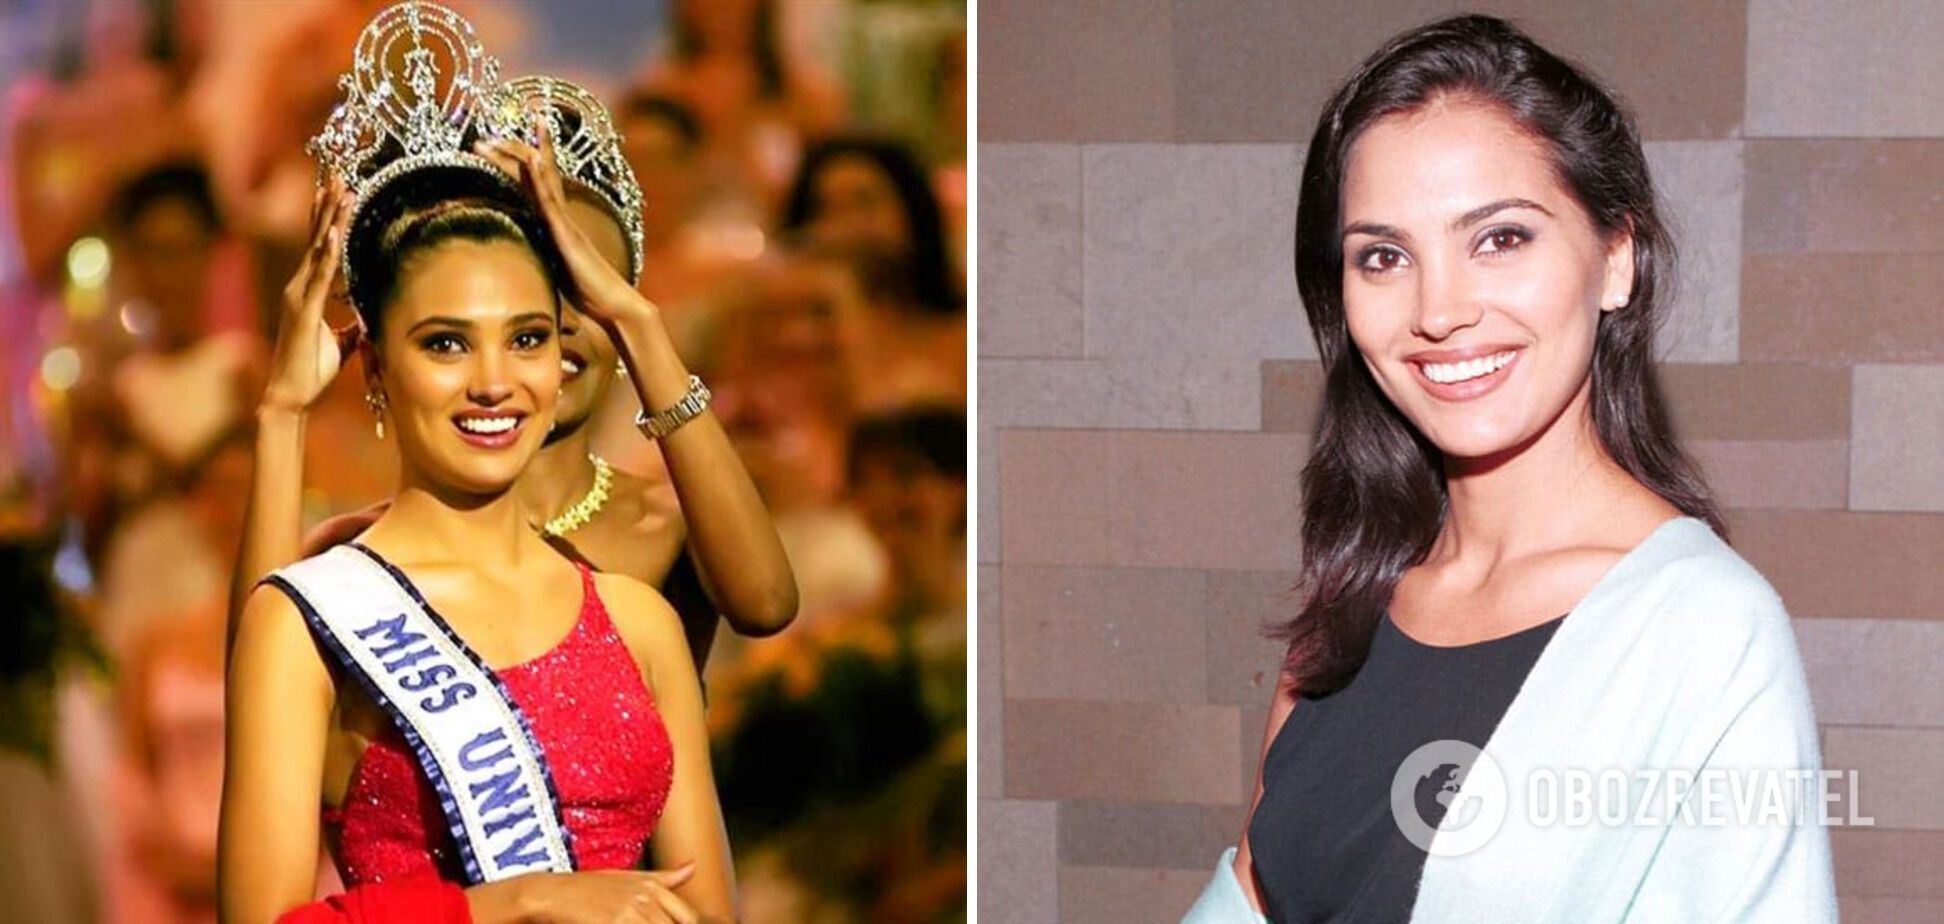 Лара Датта победила на конкурсе Мисс Вселенная 2000, который проходил на Кипре